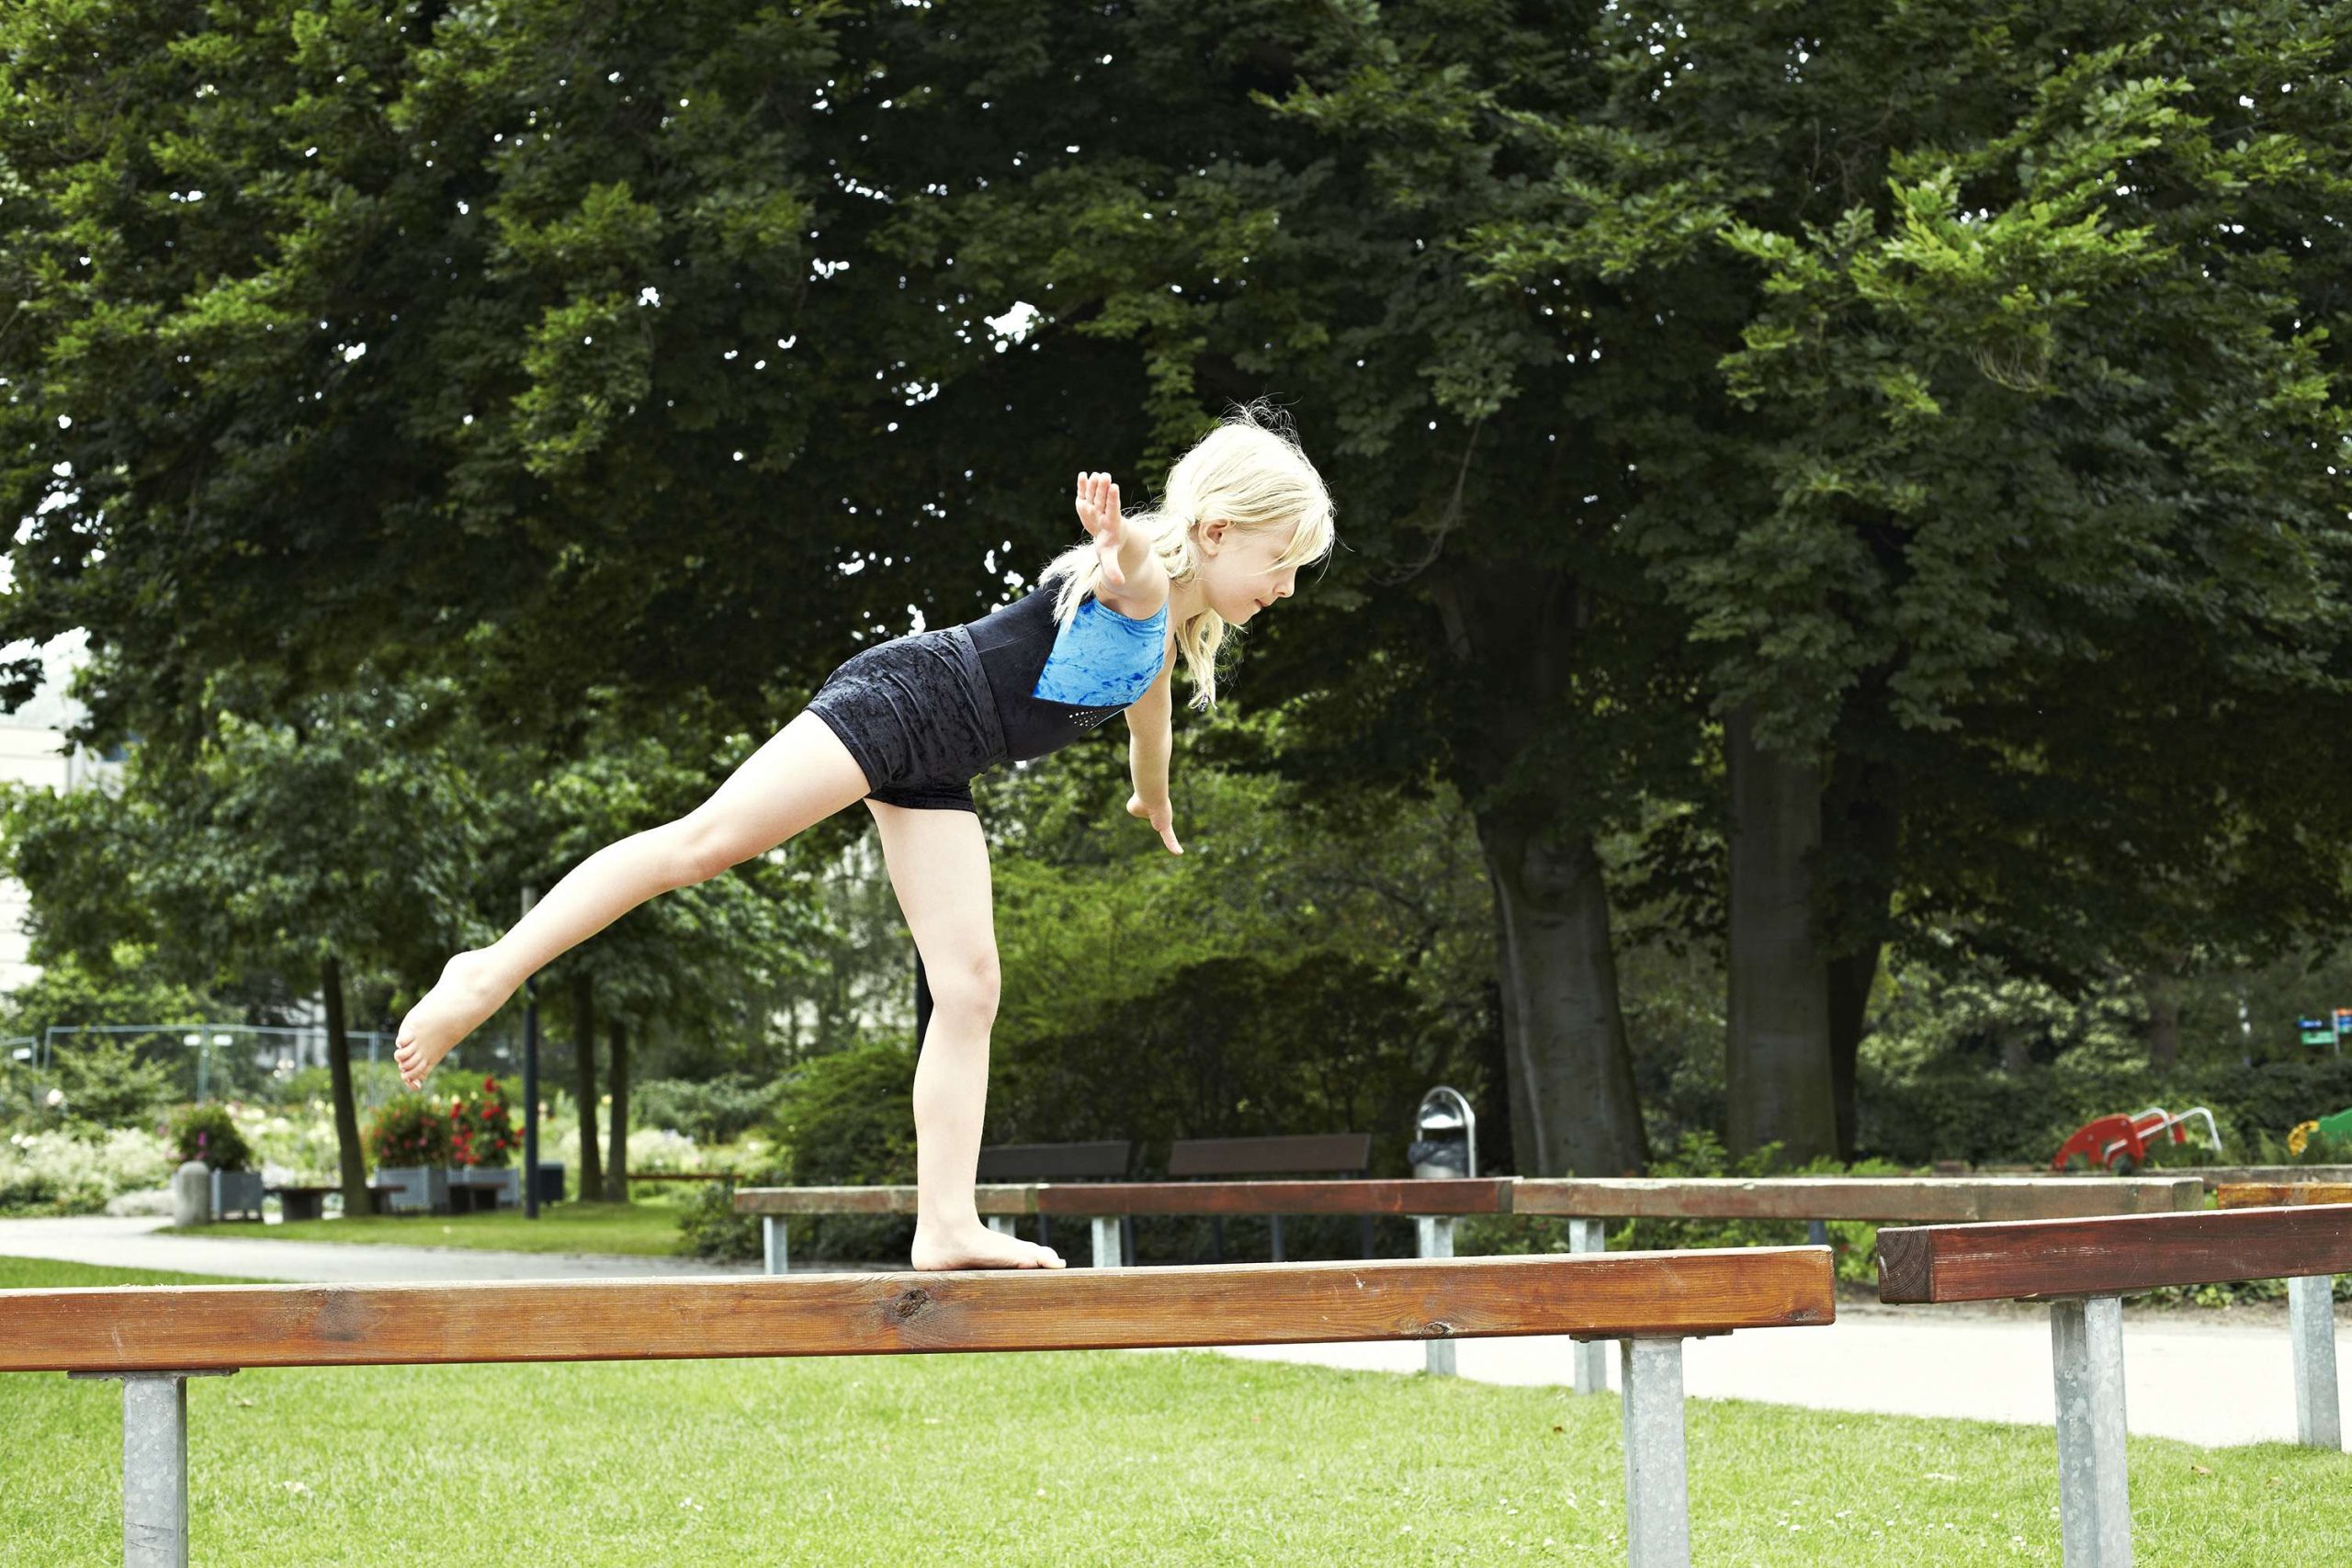 Ein Mädchen steht auf einem hölzernen Schwebebalken im Turnanzug balanciert auf einem Bein, das andere Bein ist nach hinten ausgestreckt